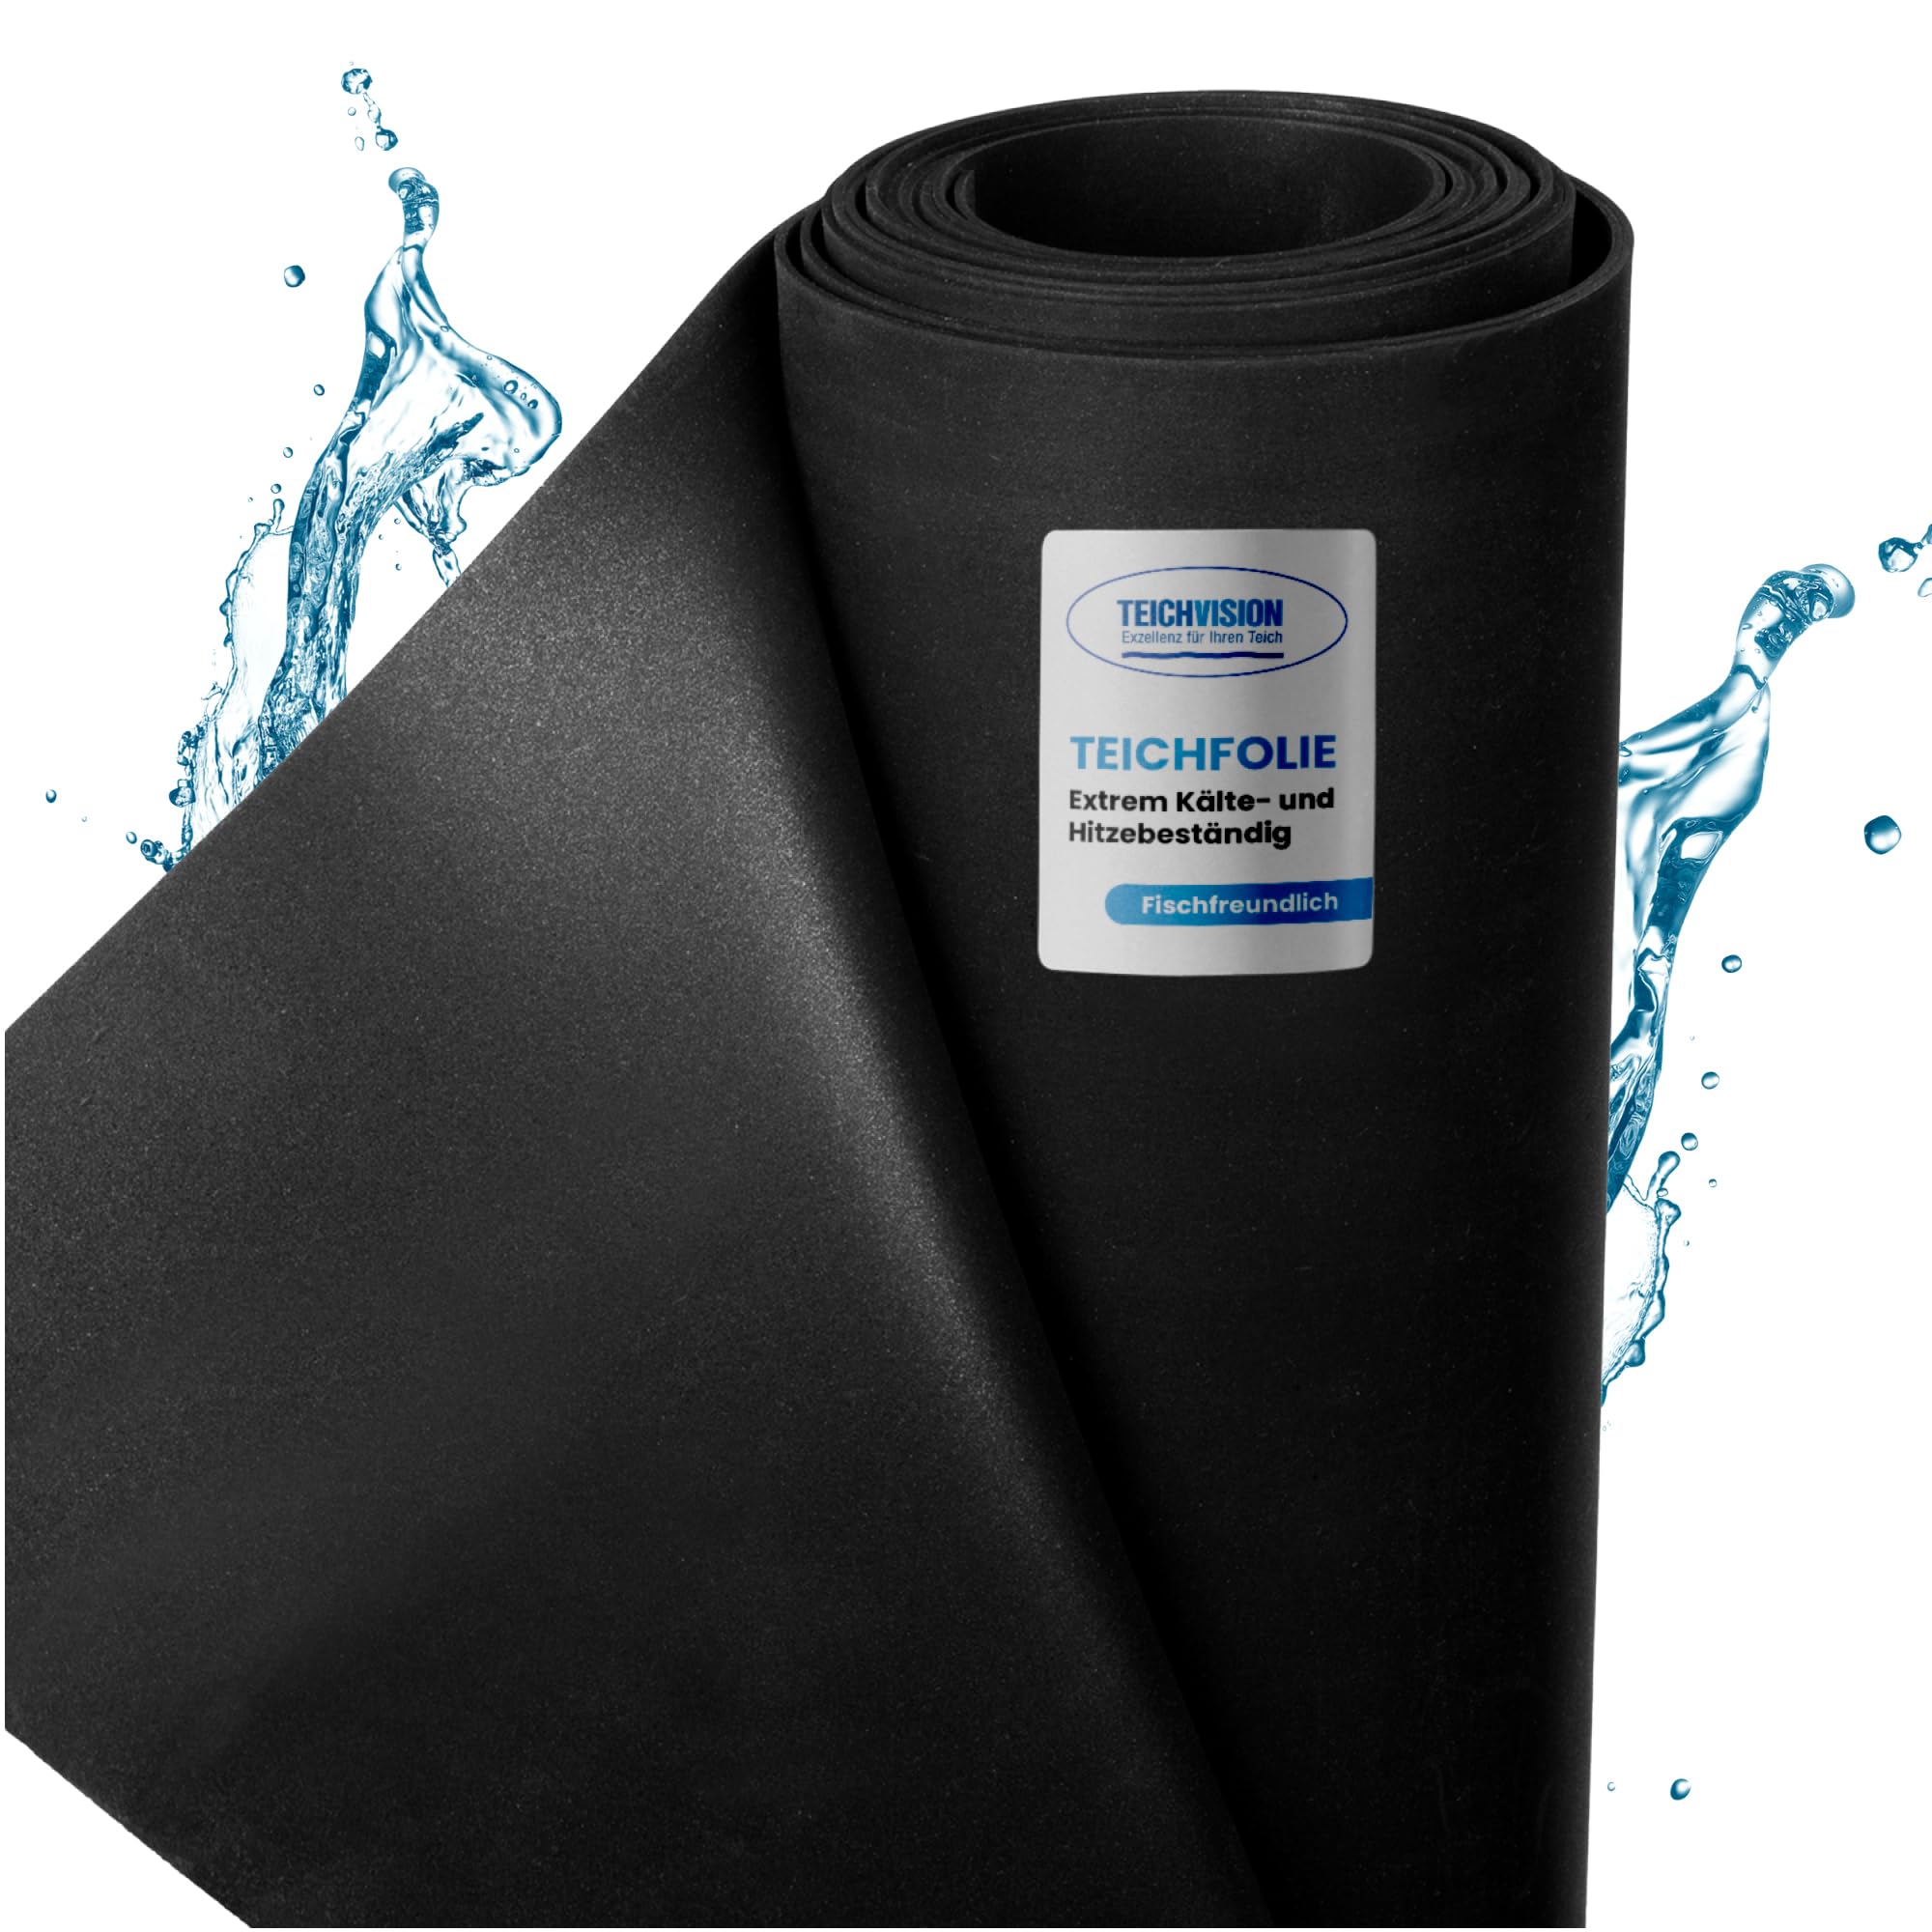 TeichVision - Premium EPDM Teichfolie Stärke 1 mm - 4,57 m x 4 m/naturgerechte EPDM Folie schwarz - besonders langlebig/auch geeignet als Hochbeet Folie wasserdicht